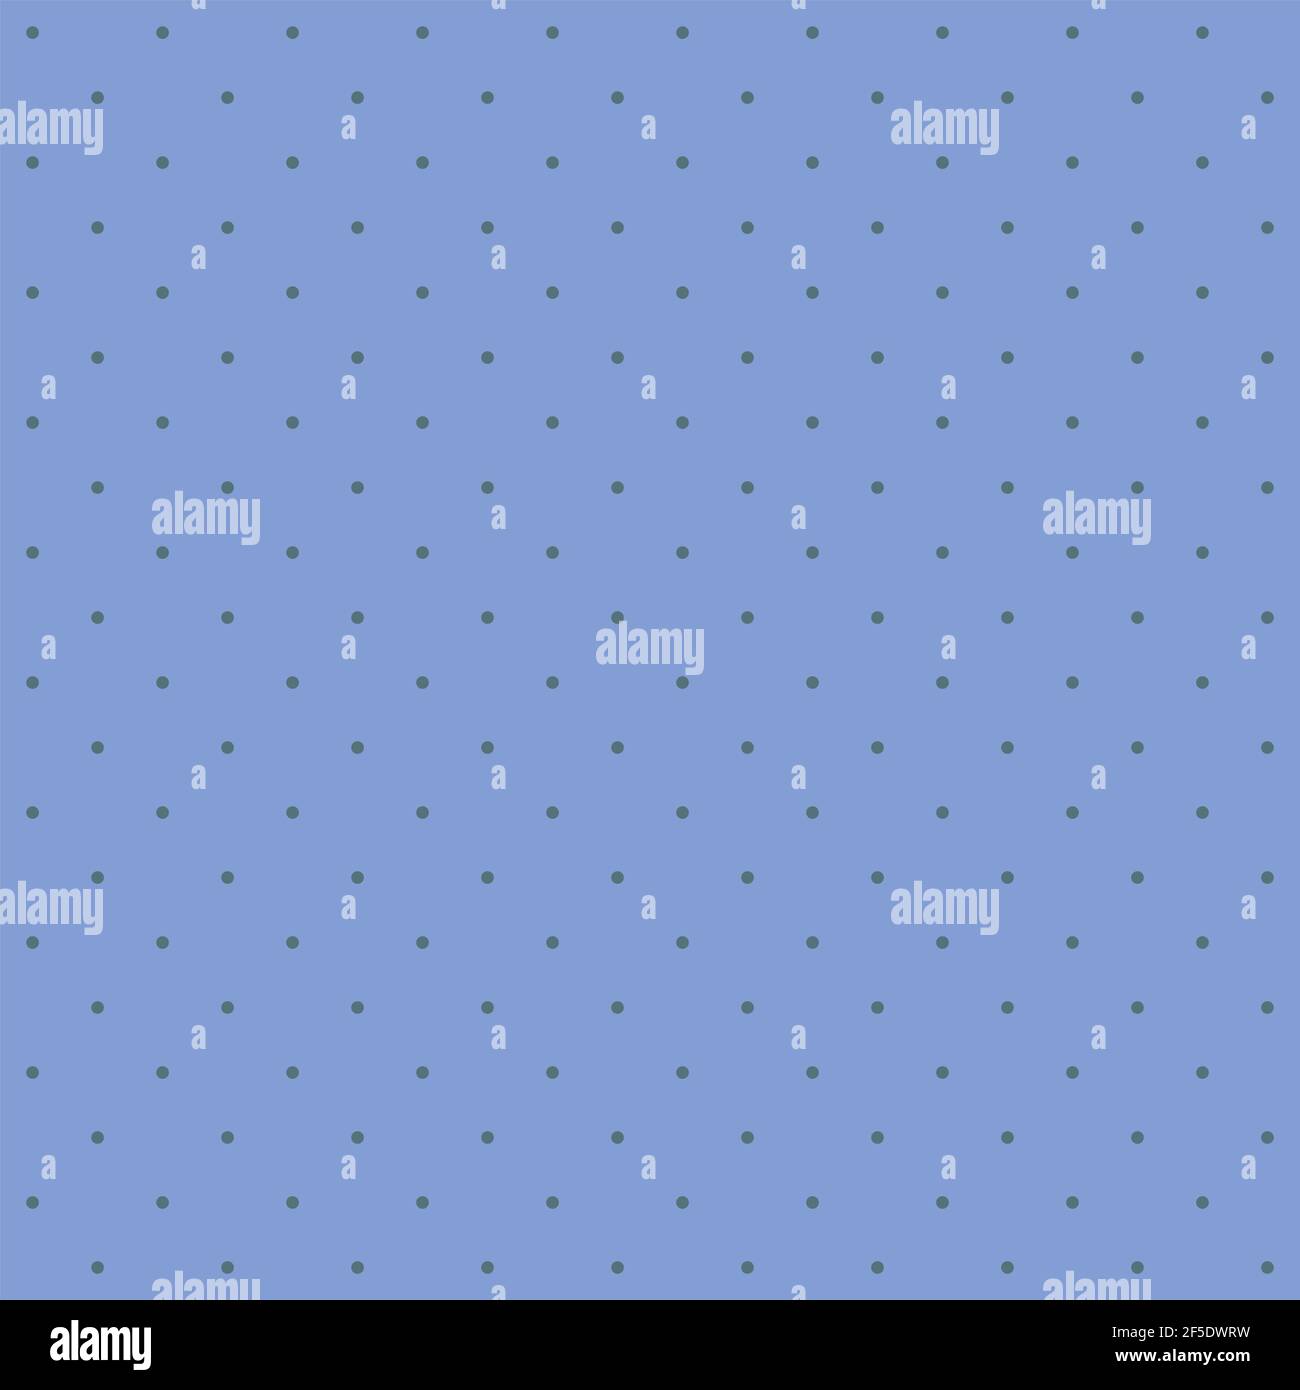 Motif sans couture - petits points bleu foncé sur un fond bleu floral doux.  Texture graphique pastel pour le design. Illustration vectorielle, EPS  Image Vectorielle Stock - Alamy